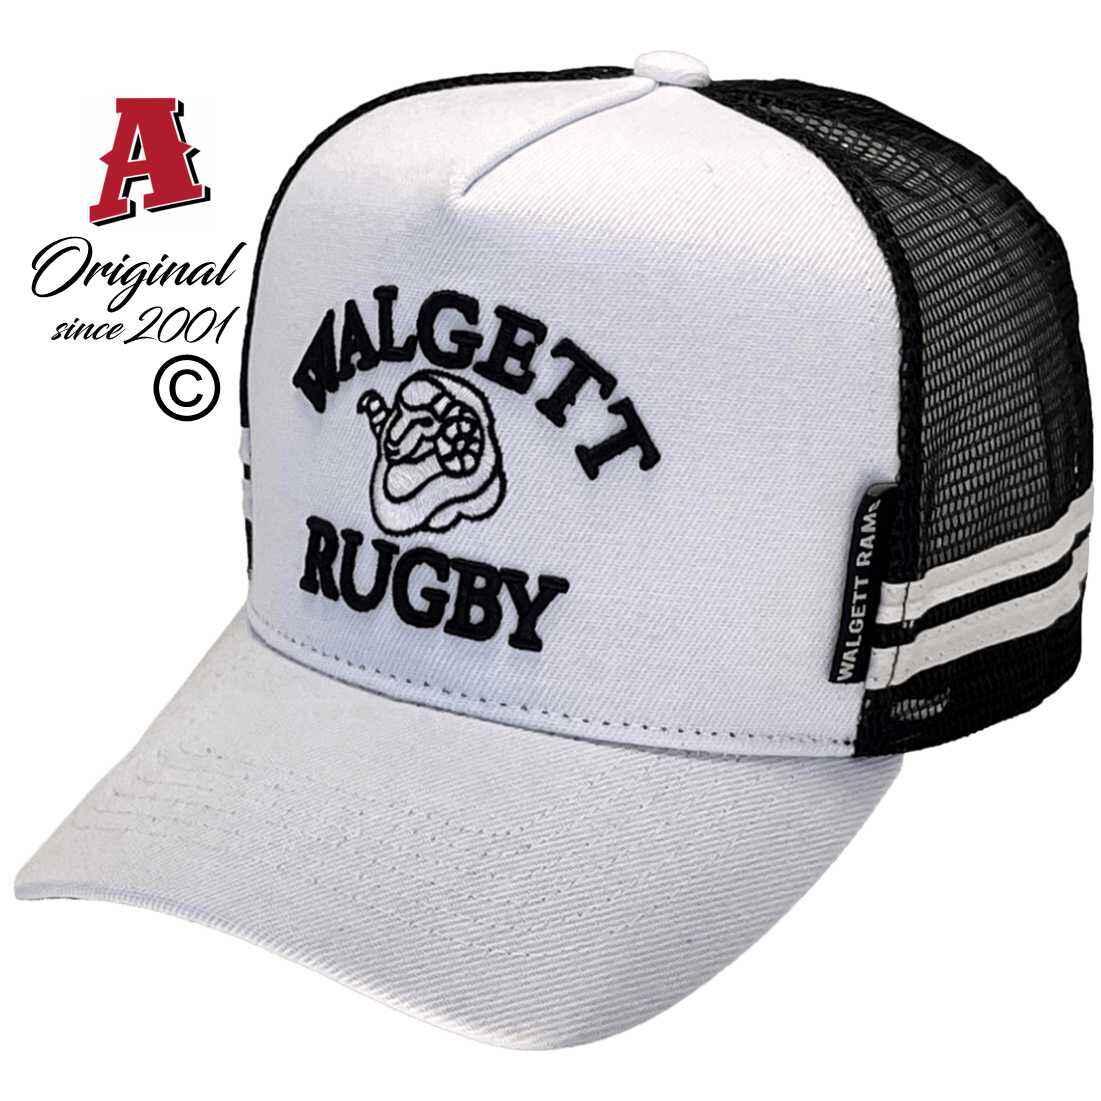 Walgett Rugby Union Walgett NSW Basic Aussie Trucker Hats with Double SideBands Australian HeadFit Crown White Black Snapback